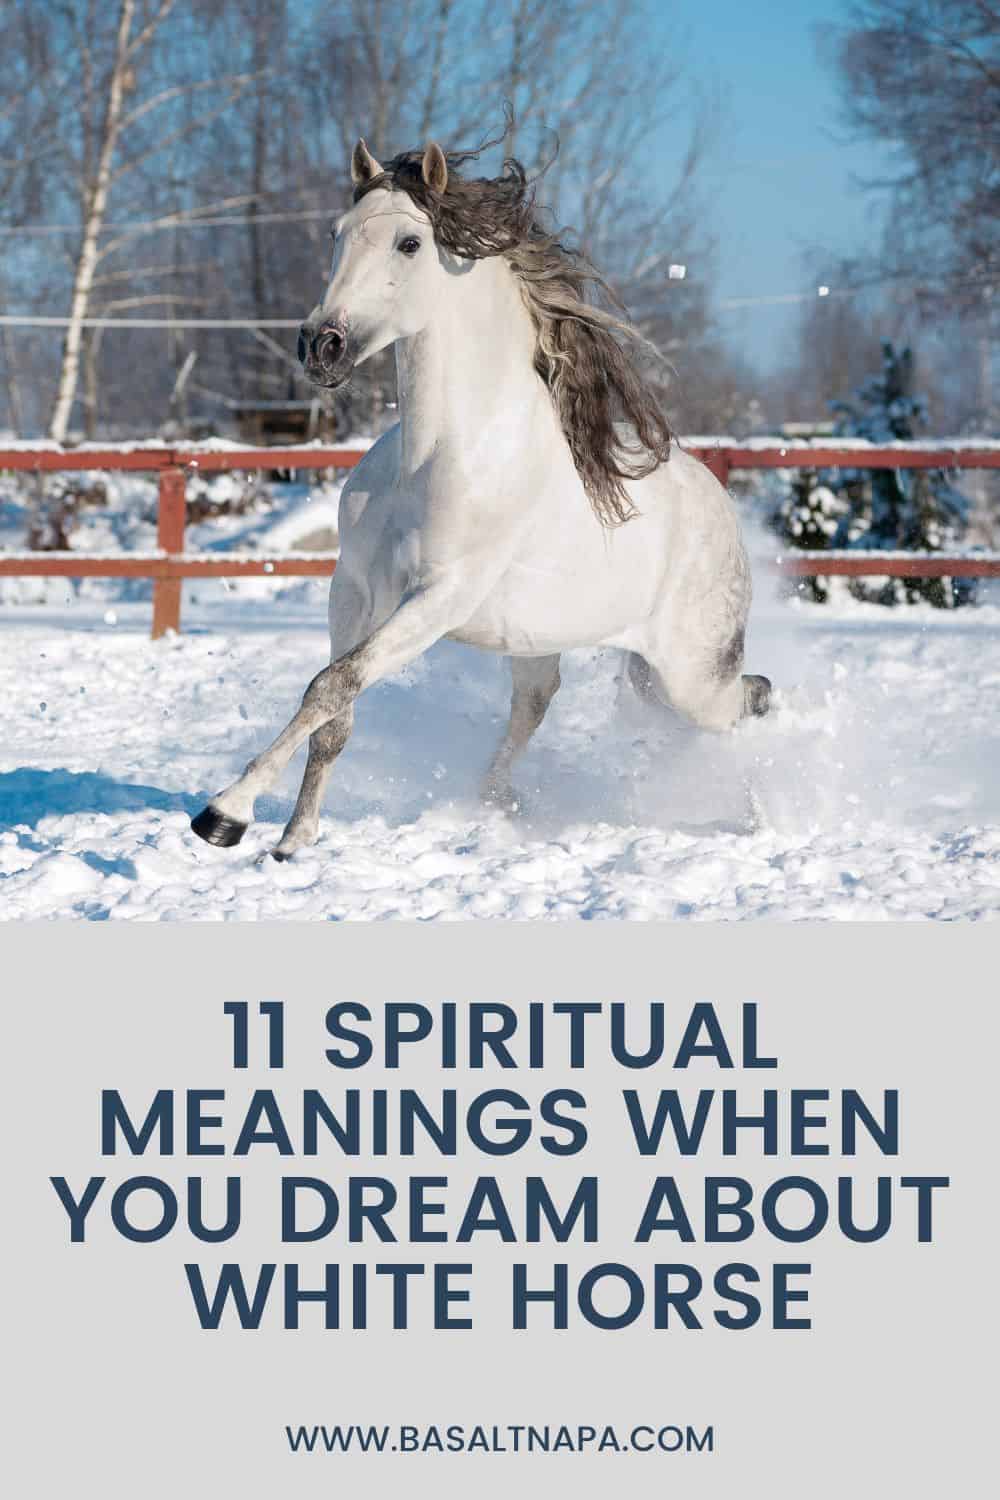 White Horse In Dreams: Positive Interpretation